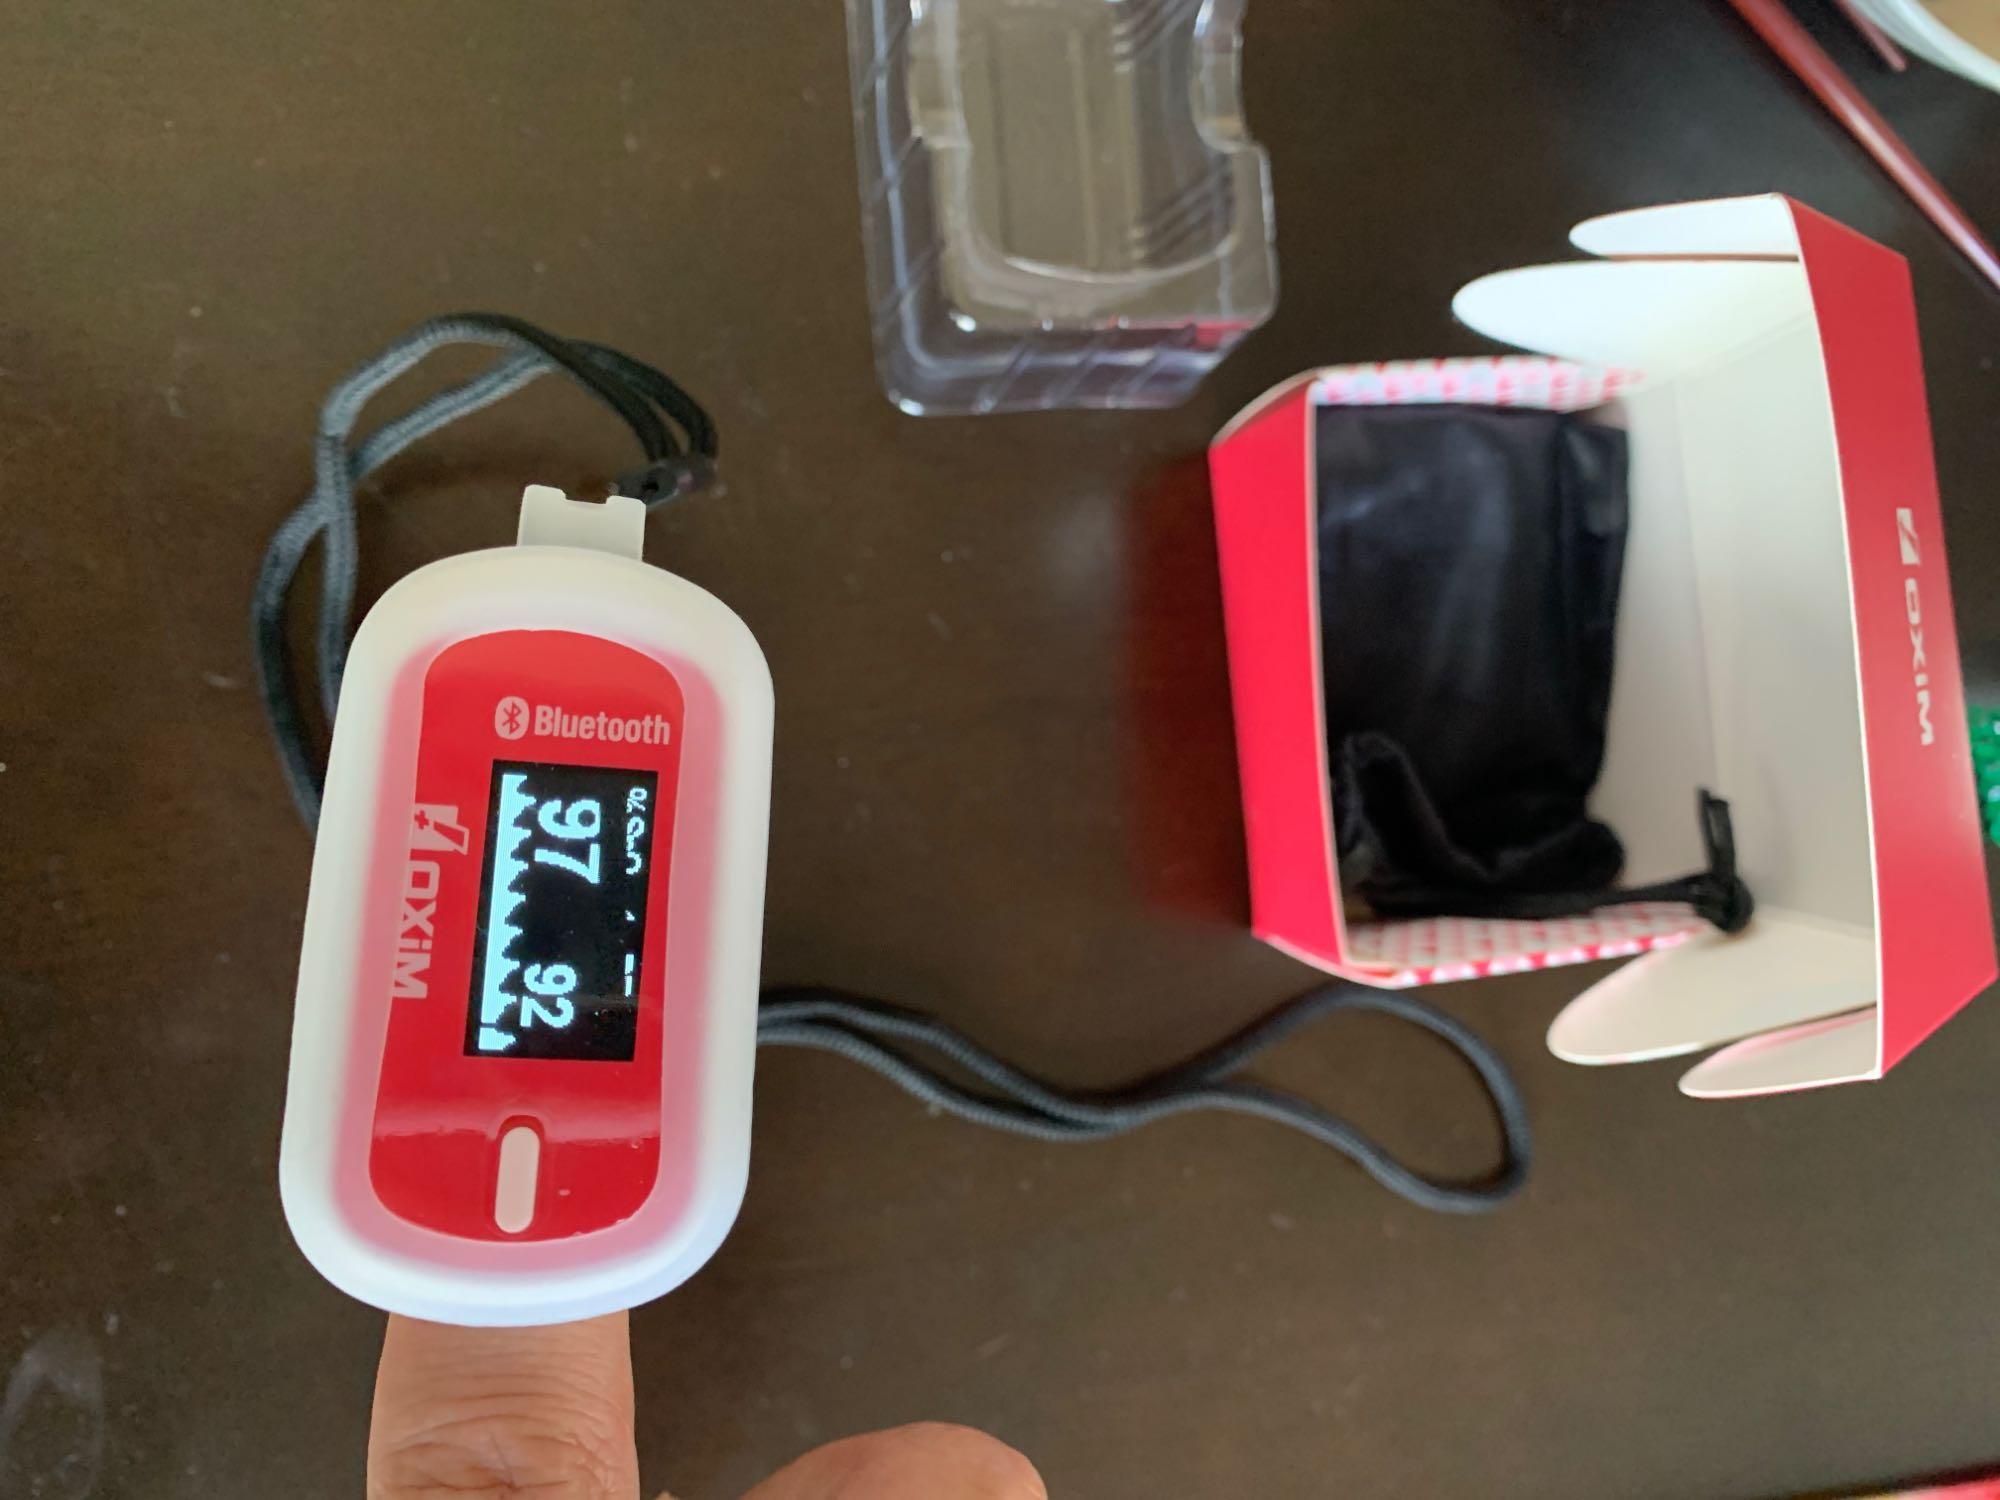 ギフト 《クーポン配布中》パルスオキシメータ S-127  Bluetooth対応 オキシメーター 呼吸器  管理医療機器  呼吸機能 の確認 パルキシメーター